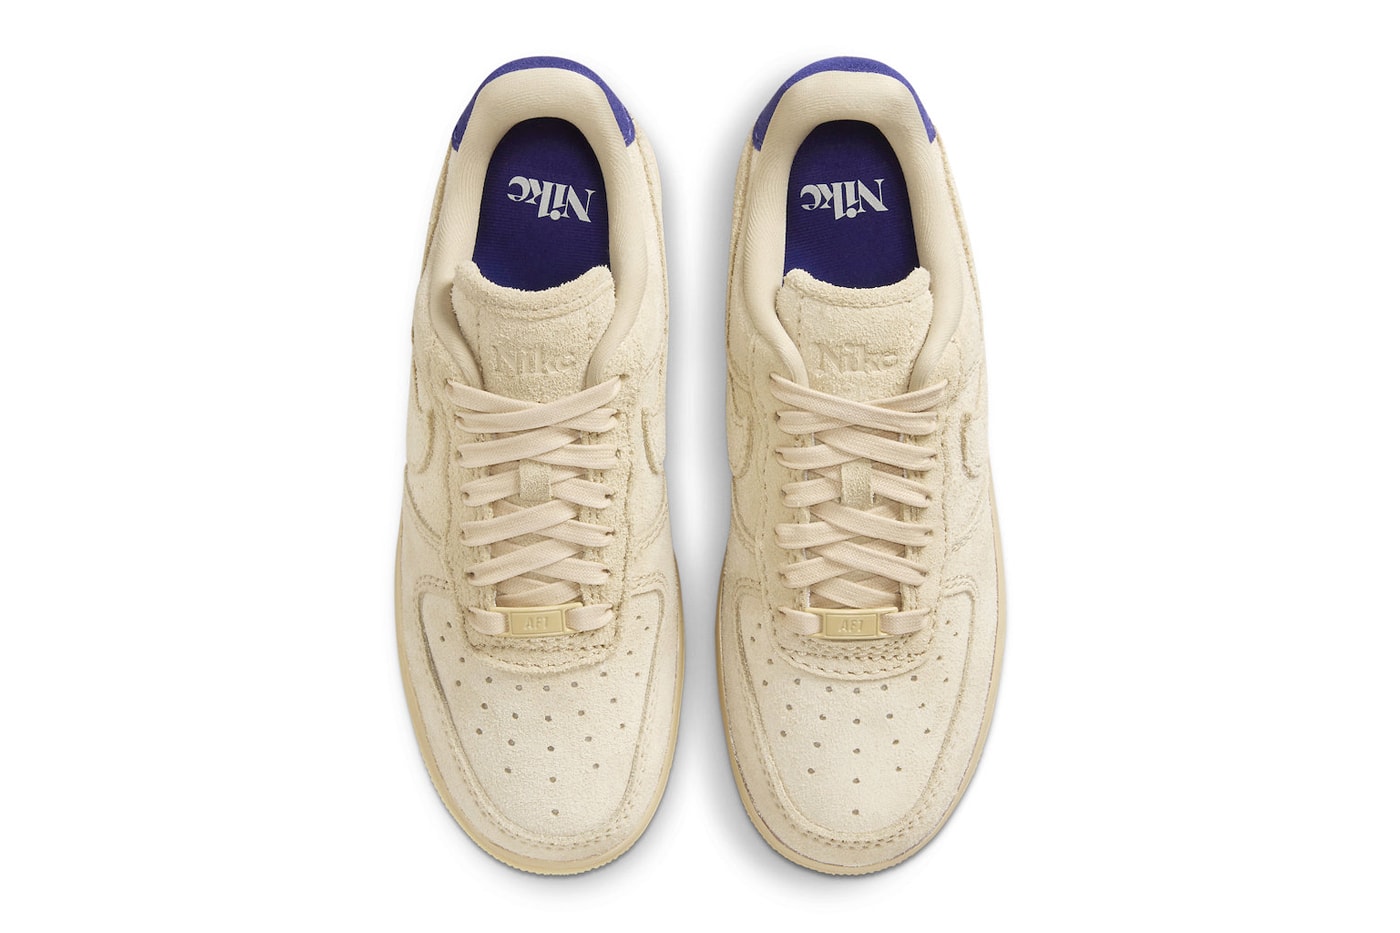 ナイキが来たる夏に向けてエアフォース1の新色モデル “グレイン”をスタンバイ Nike Air Force 1 Low Surfaces in "Grain" FN7202-224 Grain/Grain-Deep Royal Blue-Polar classic white shoes summer 2023 low tops nike swoosh